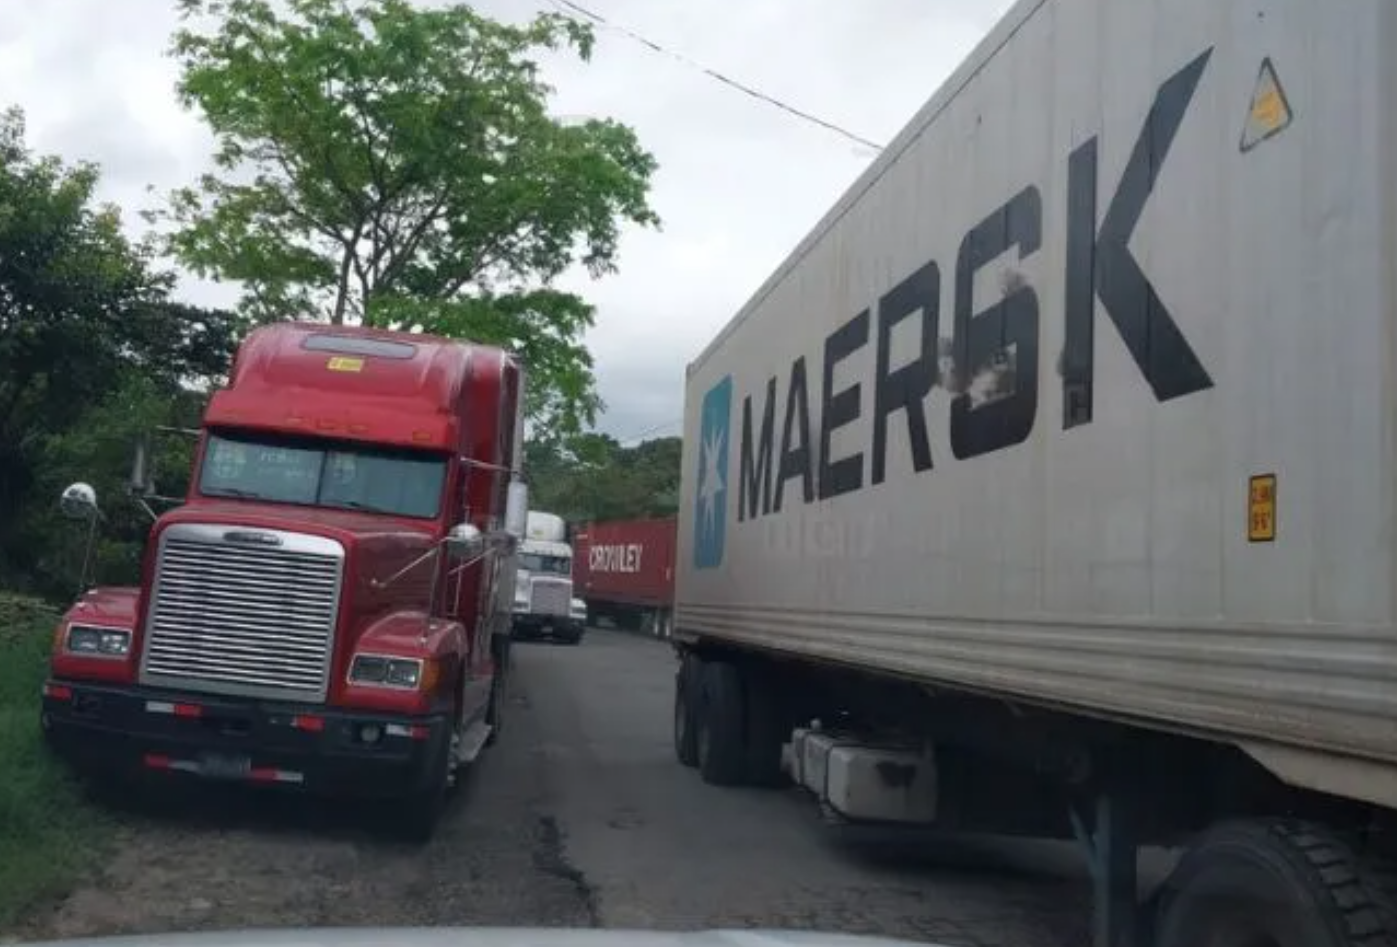 Transporte de carga que viajan a Costa Rica tomarán más acciones ante imposición de visa